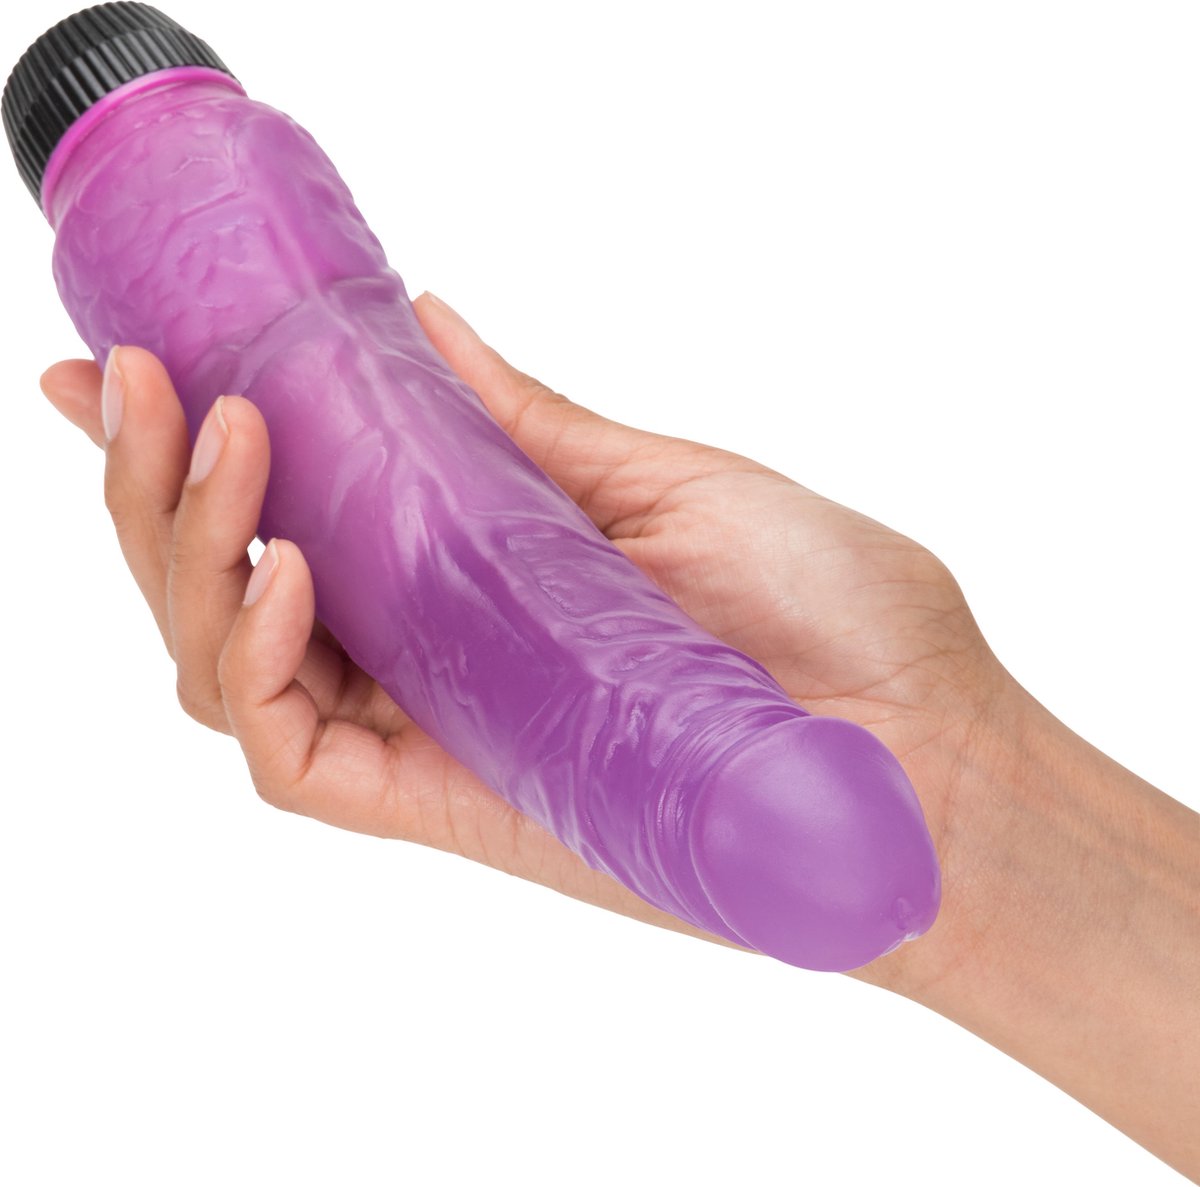 Вибратор Shining Lavender Vibrator для стимулипрвания половых органов